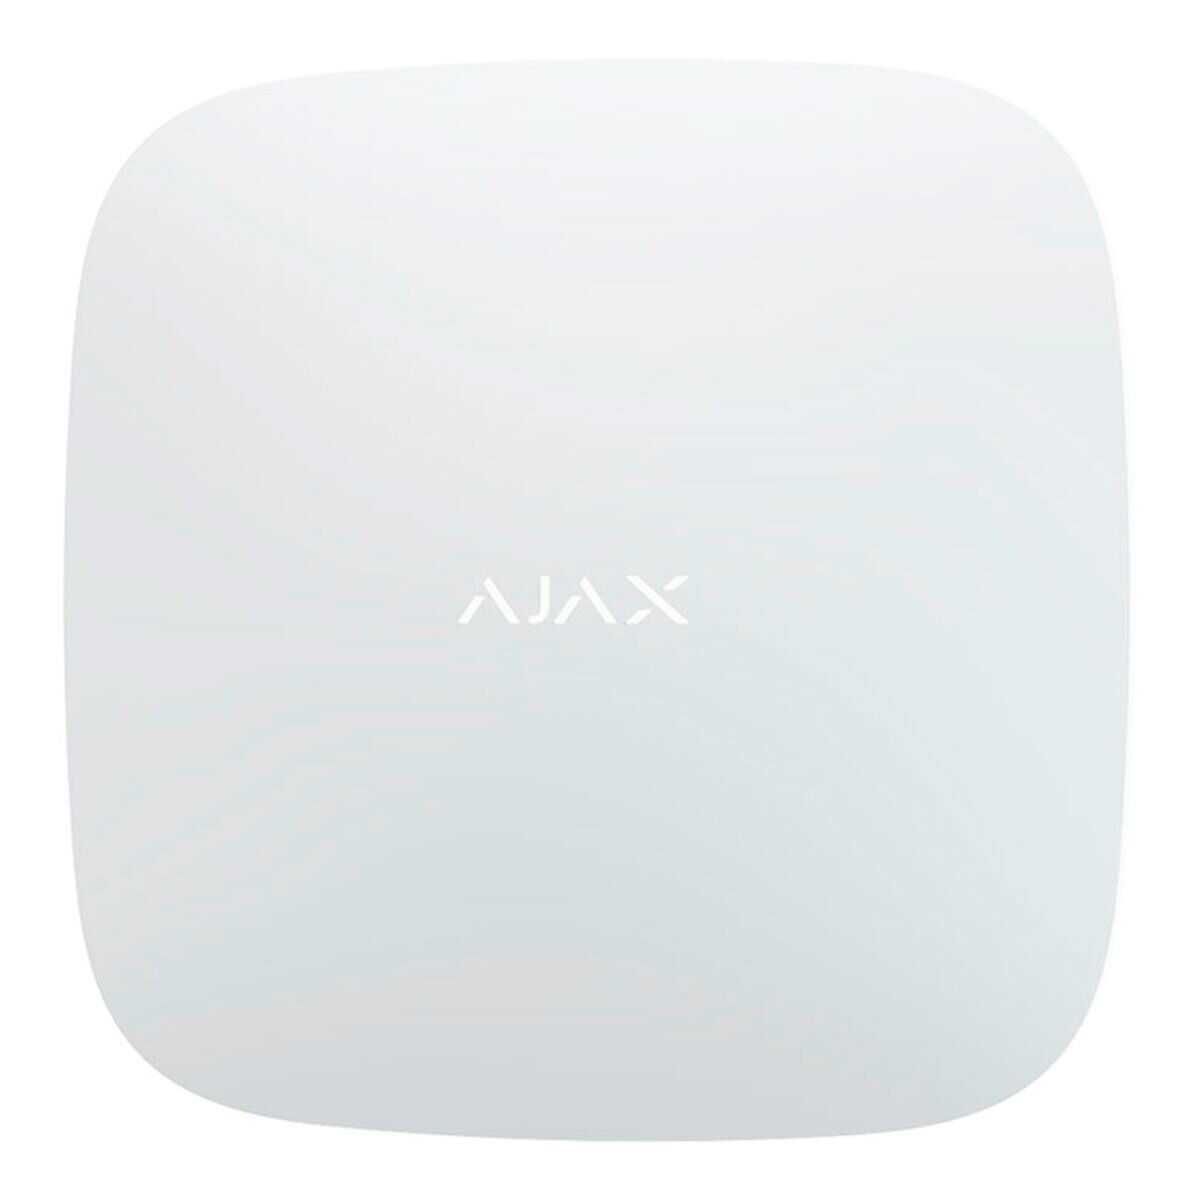 Установка, продаж GSM сигналізації Ajax. Монтаж вуличної сигналізації